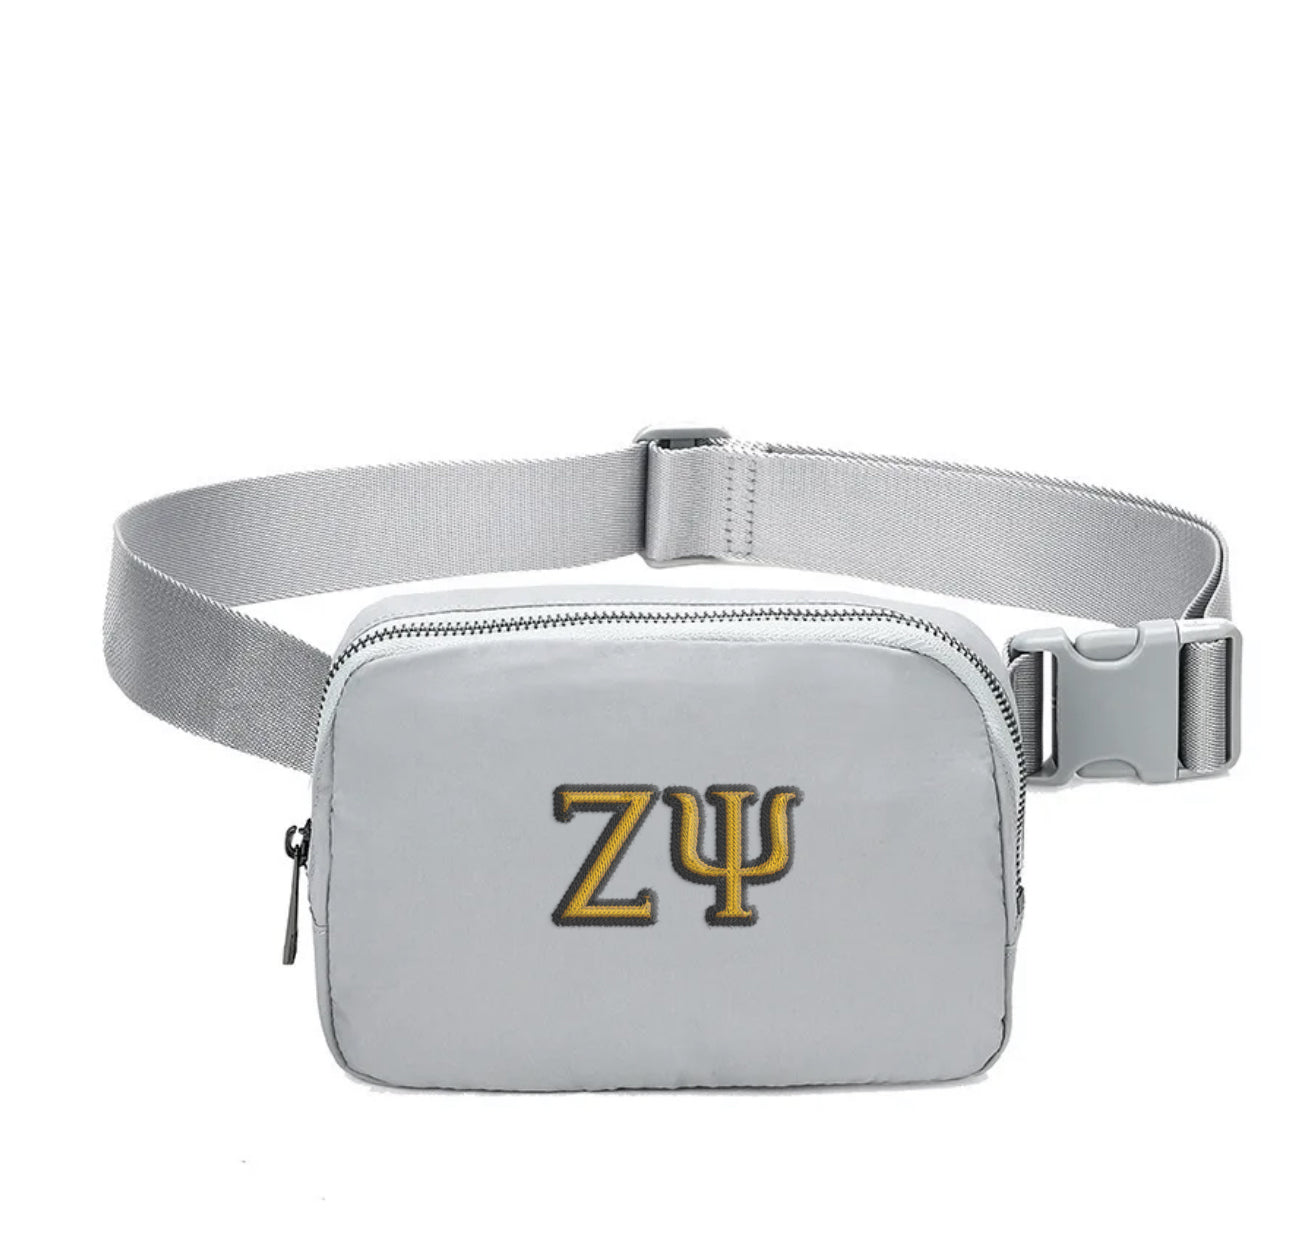 Zeta Psi Embroidered Belt Bag